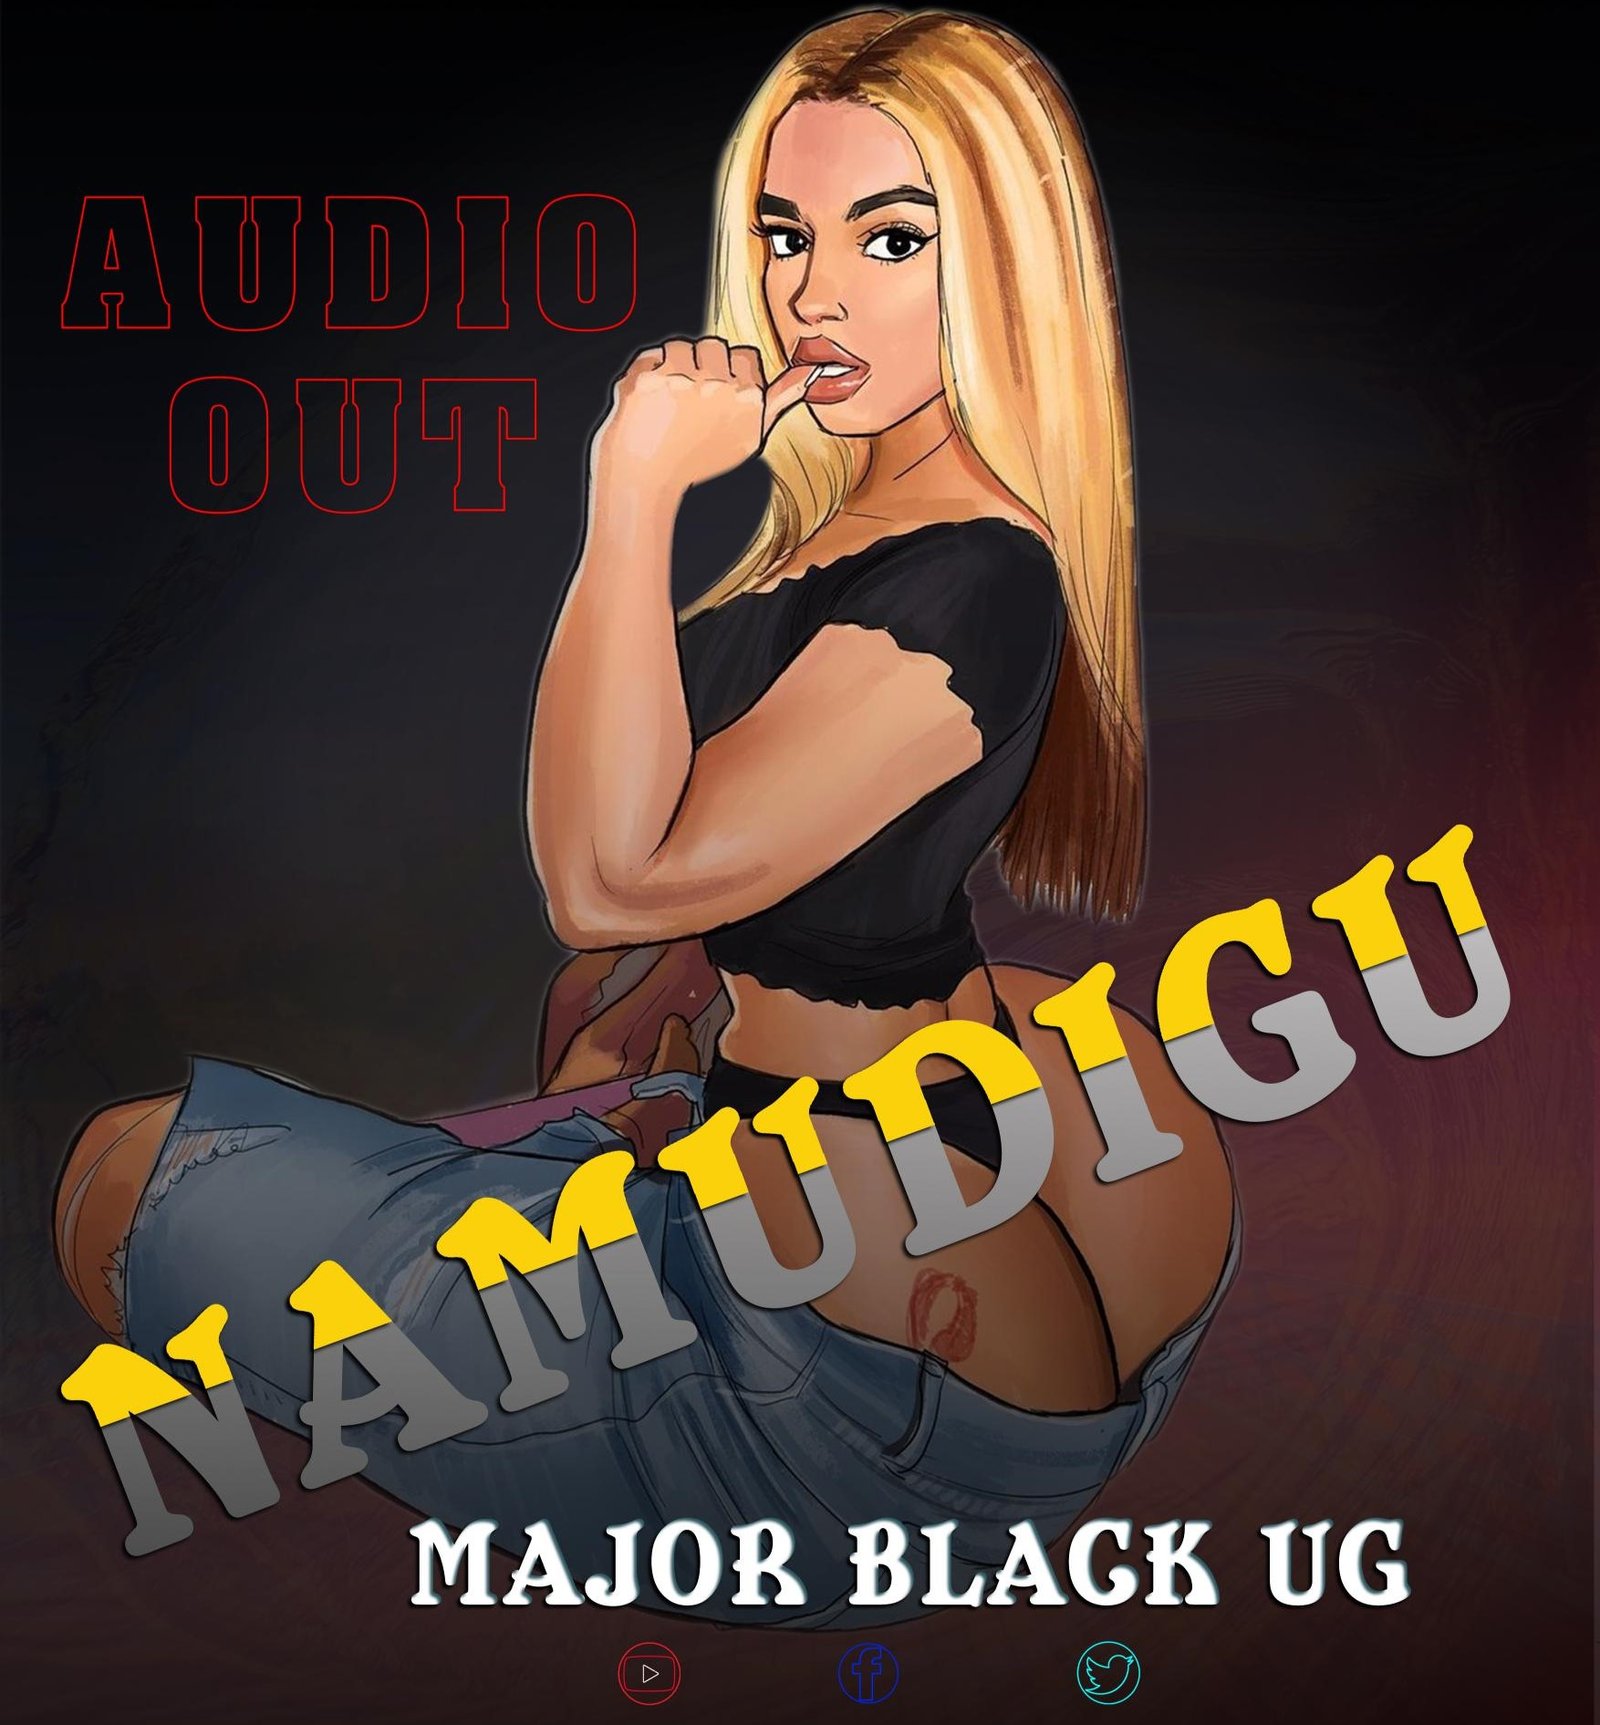 Major Black UG